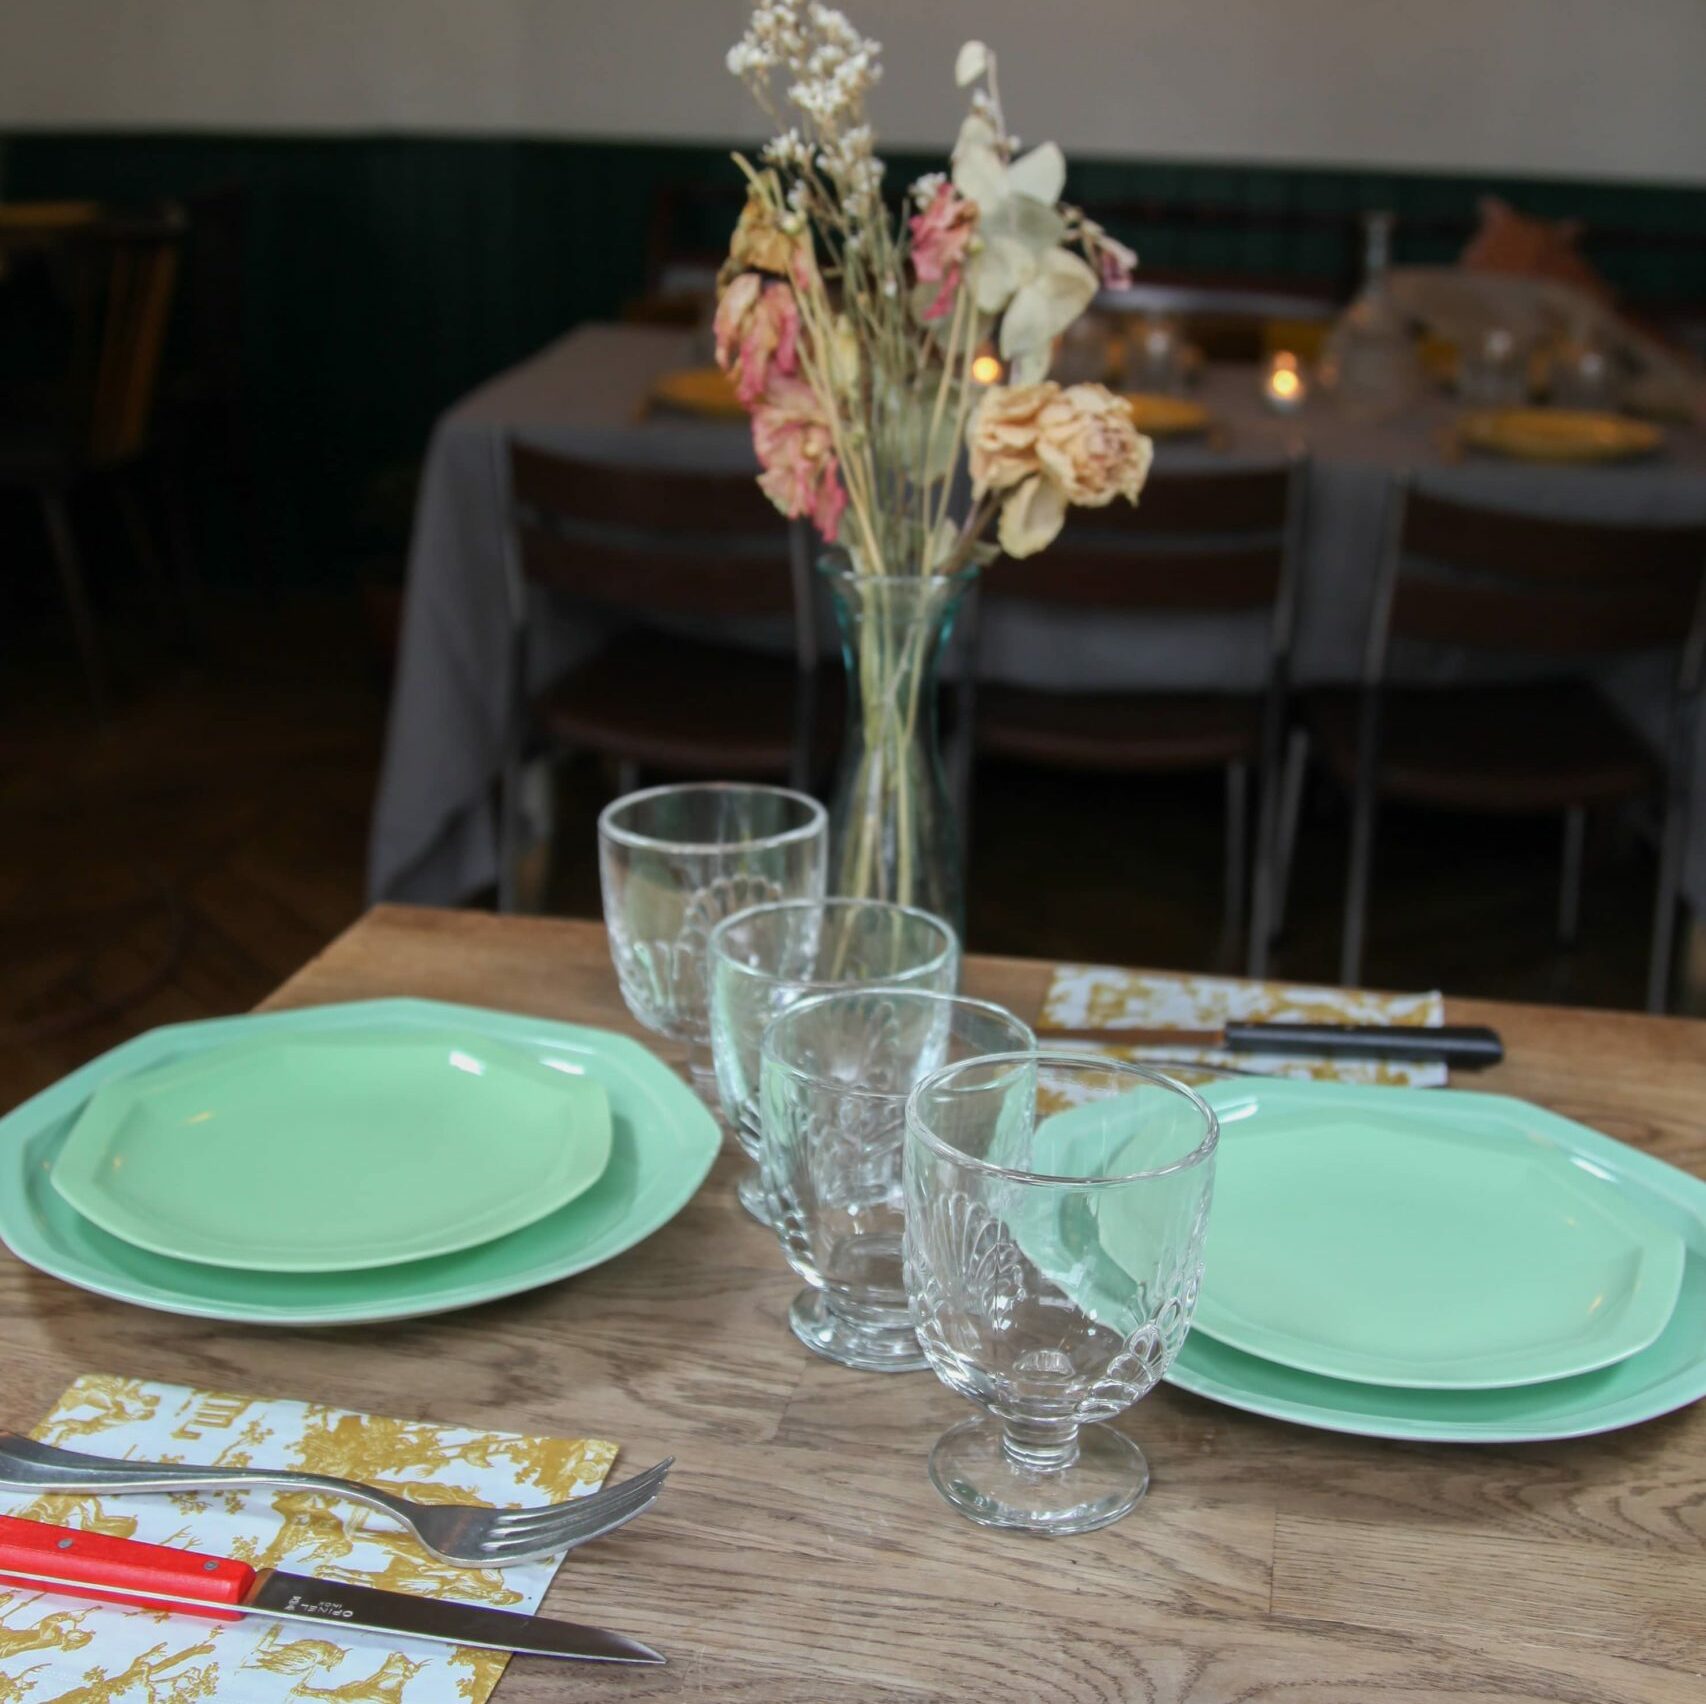 Assiettes vertes, un service de table moderne français